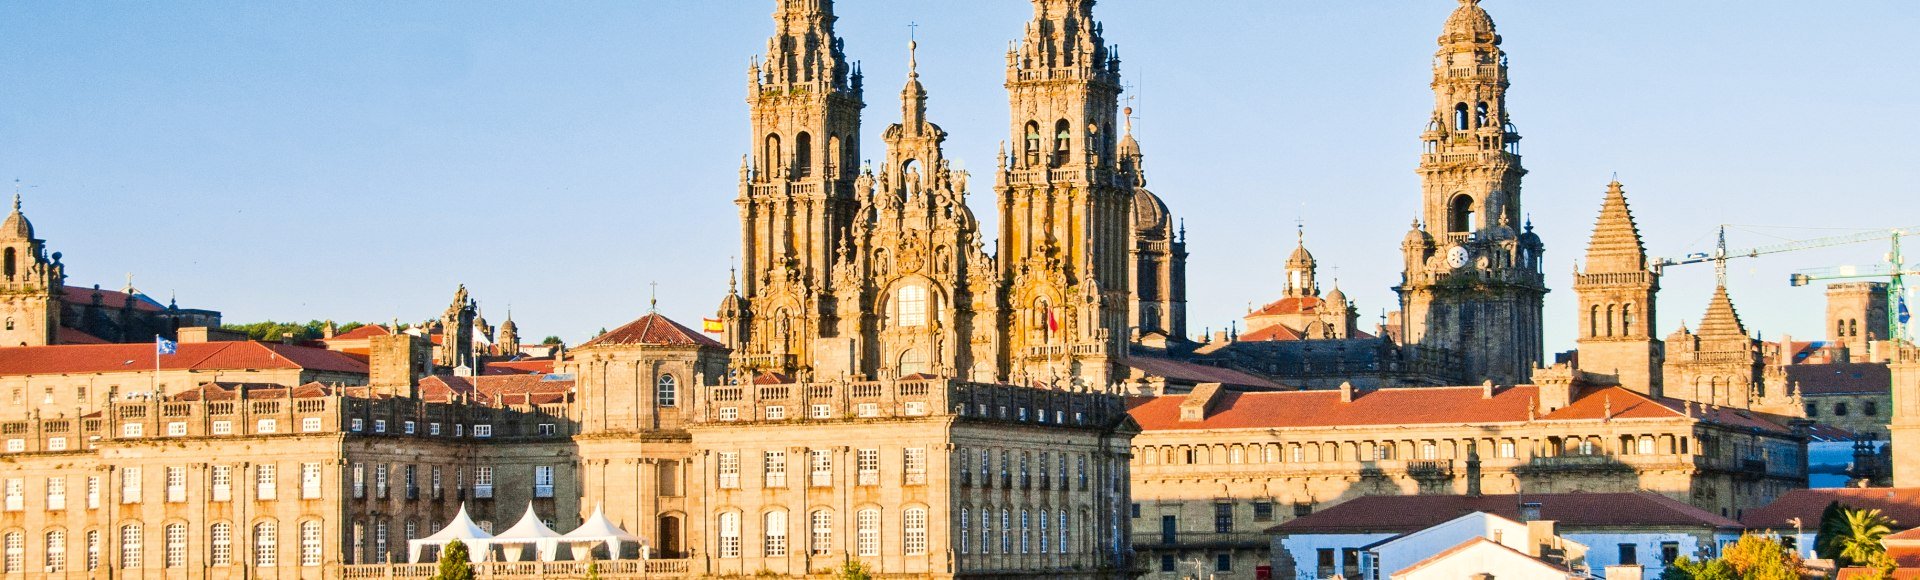 Blick auf die Kathedrale von Santiago de Compostela, Spanien, © iStockphoto.com - Vlad Karavaev